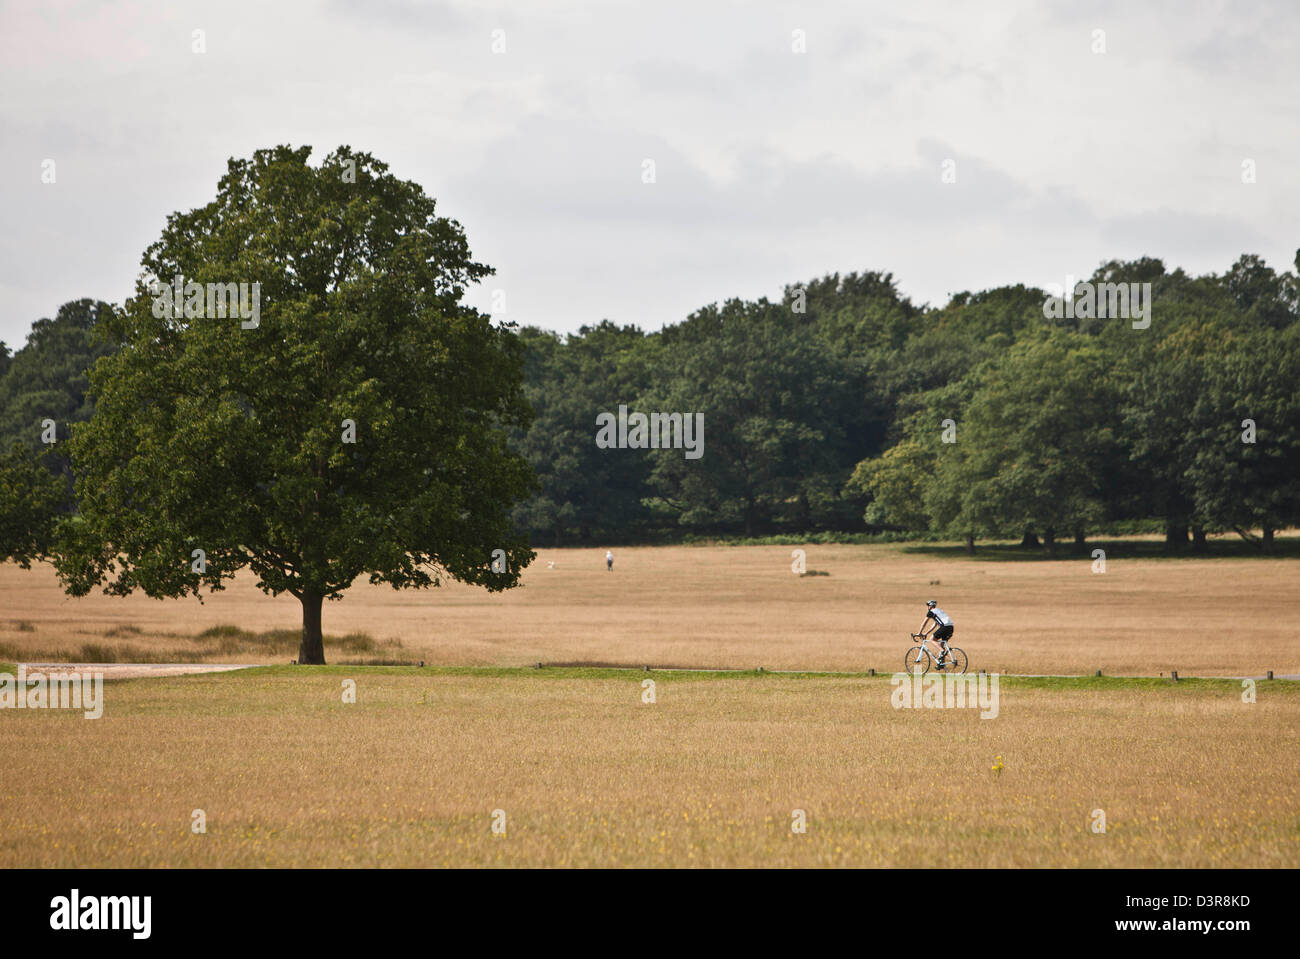 Cycliste sur route cycle olympique, Richmond Park, London, England, UK Banque D'Images